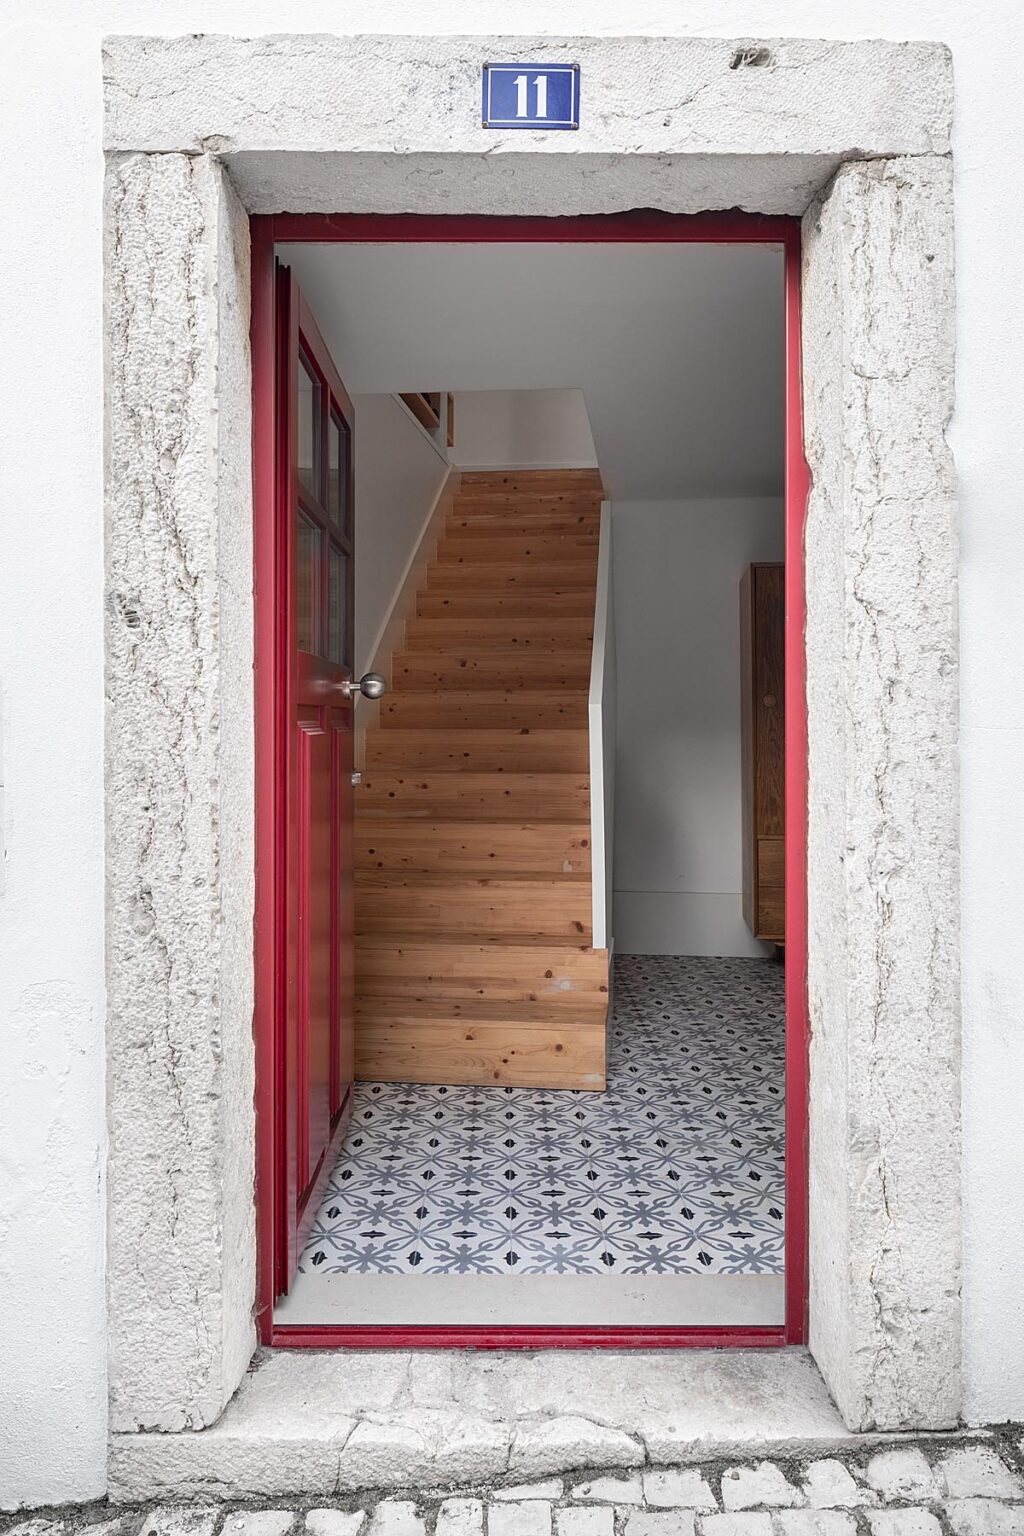 Αρχιτεκτονική αρμονία και ενίσχυση της οικογενειακής ζωής στη Λειρία. Σπίτι Ματίας Άλβες. Joana Marcelino Studio